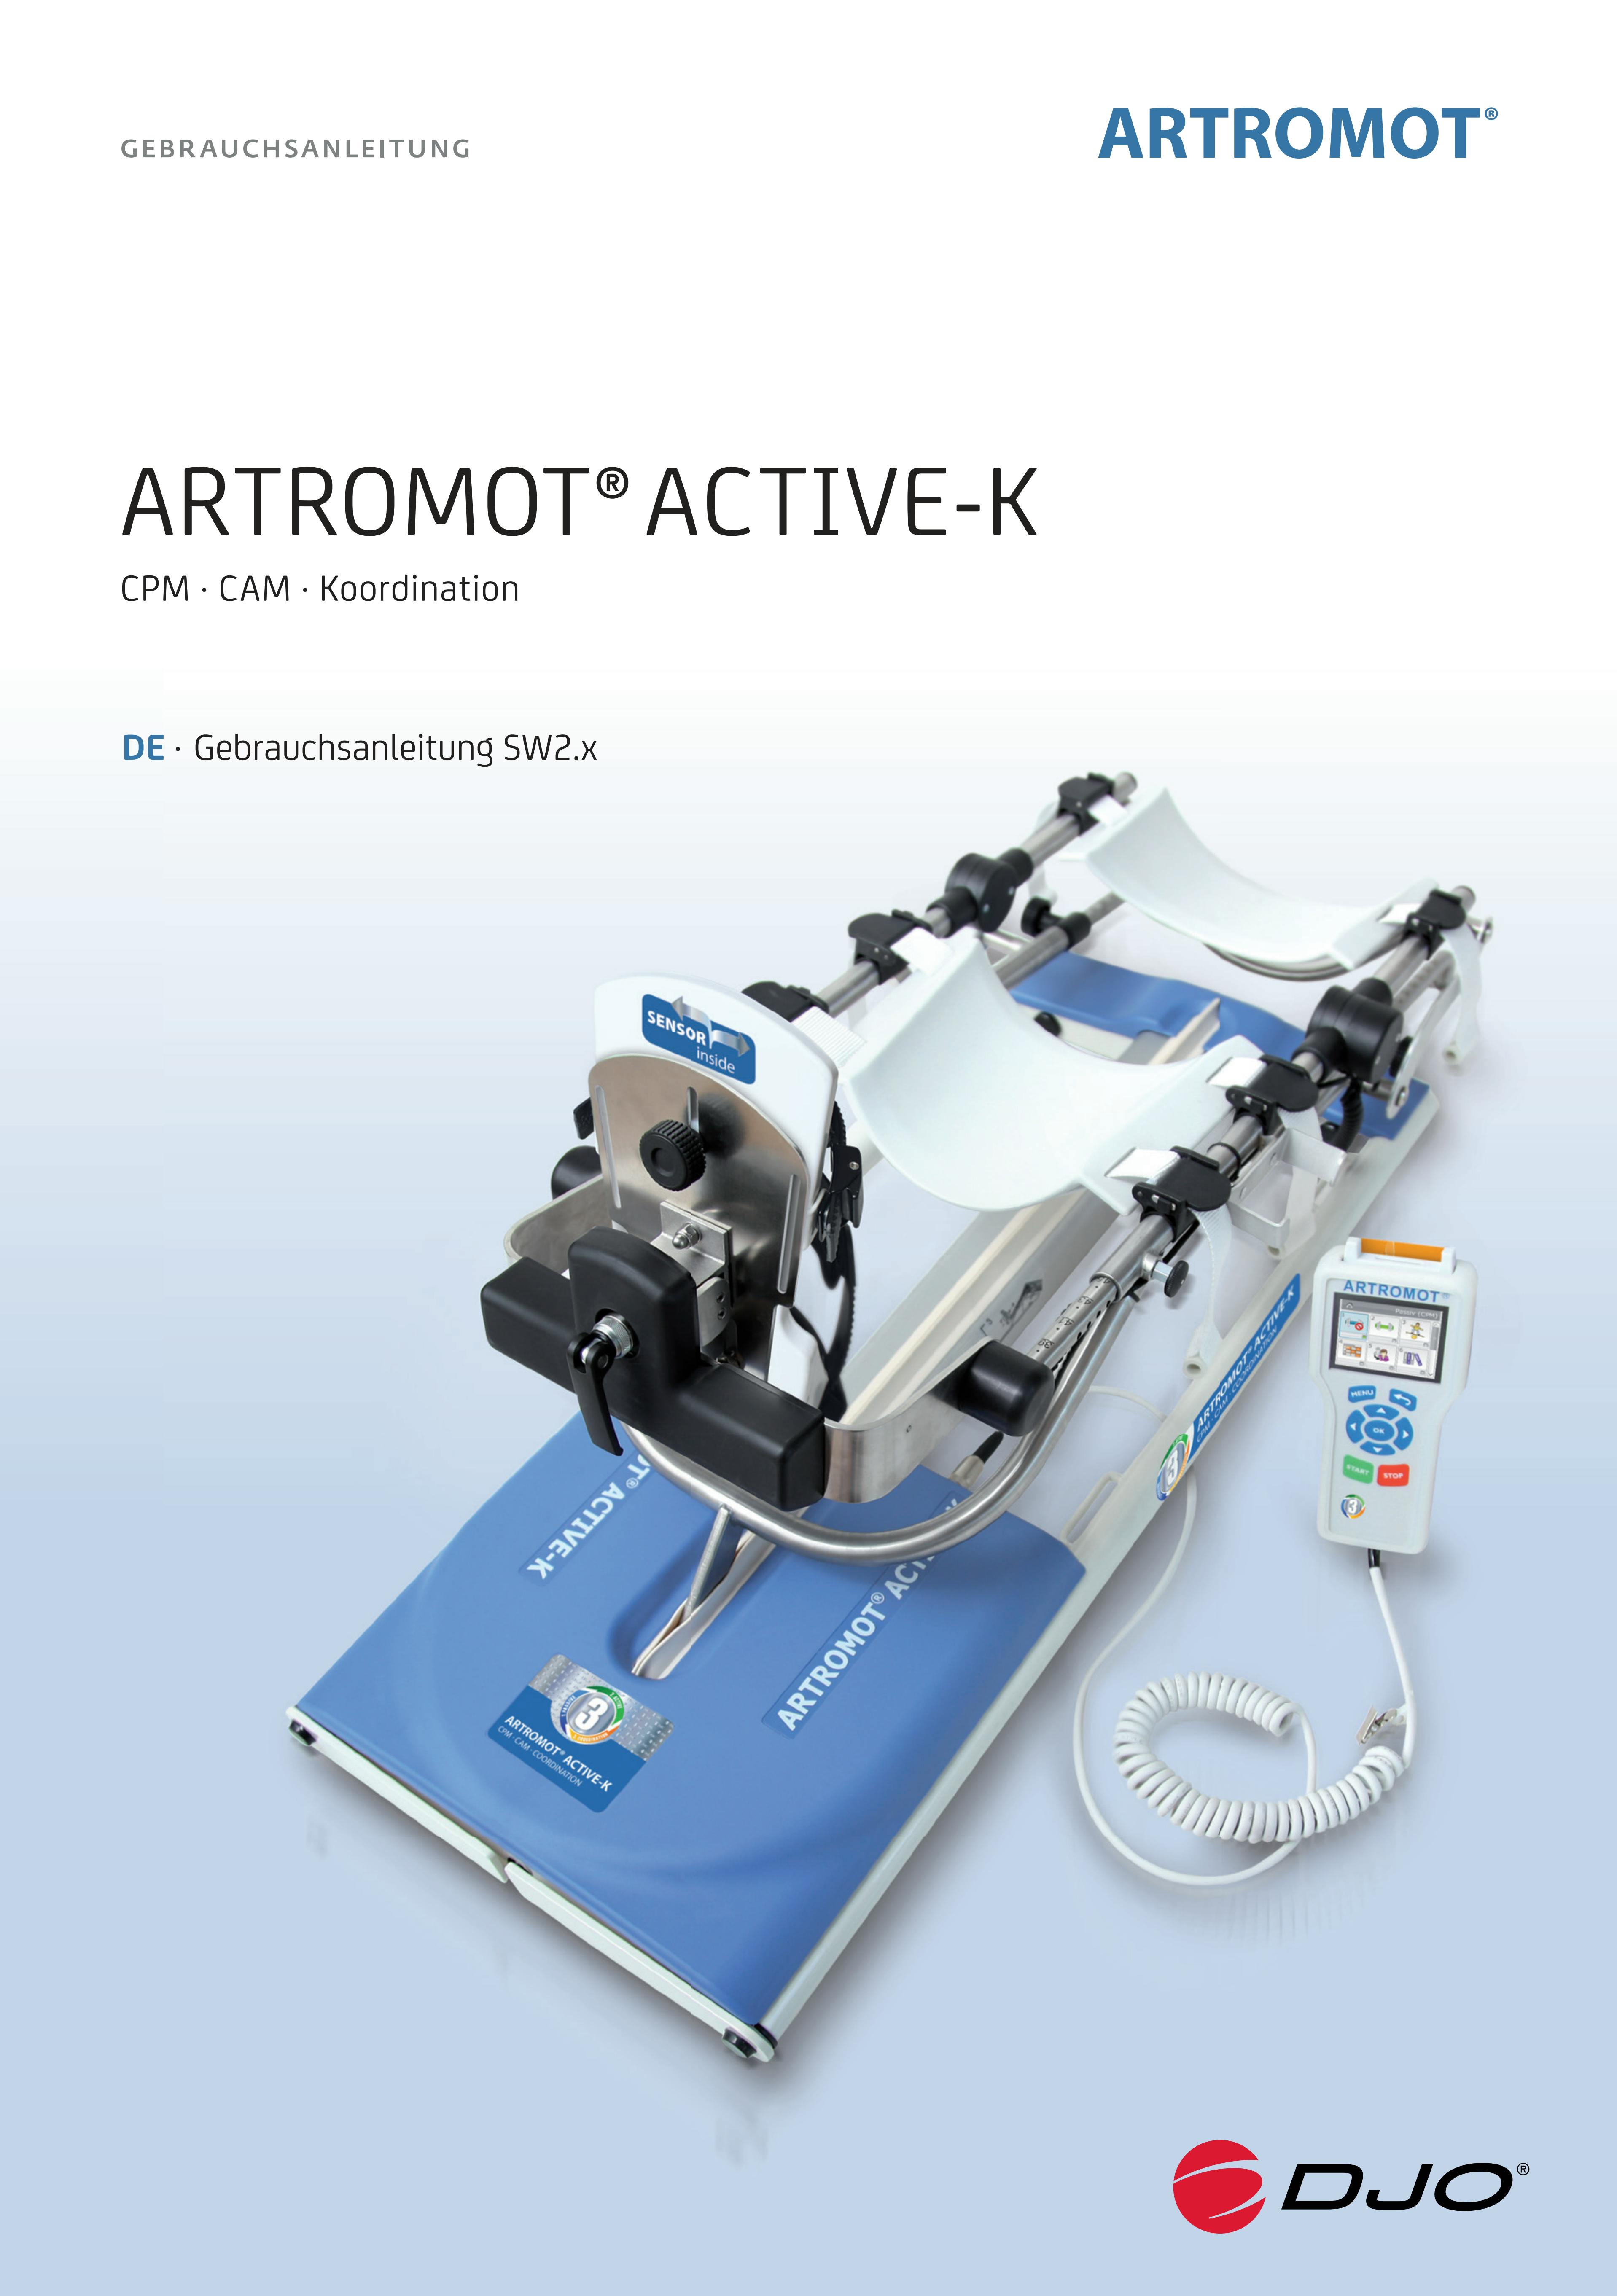 Gebrauchsanleitung_ARTROMOT_Active-K_MOT-AC-328-D-REV.06-08-2018.pdf